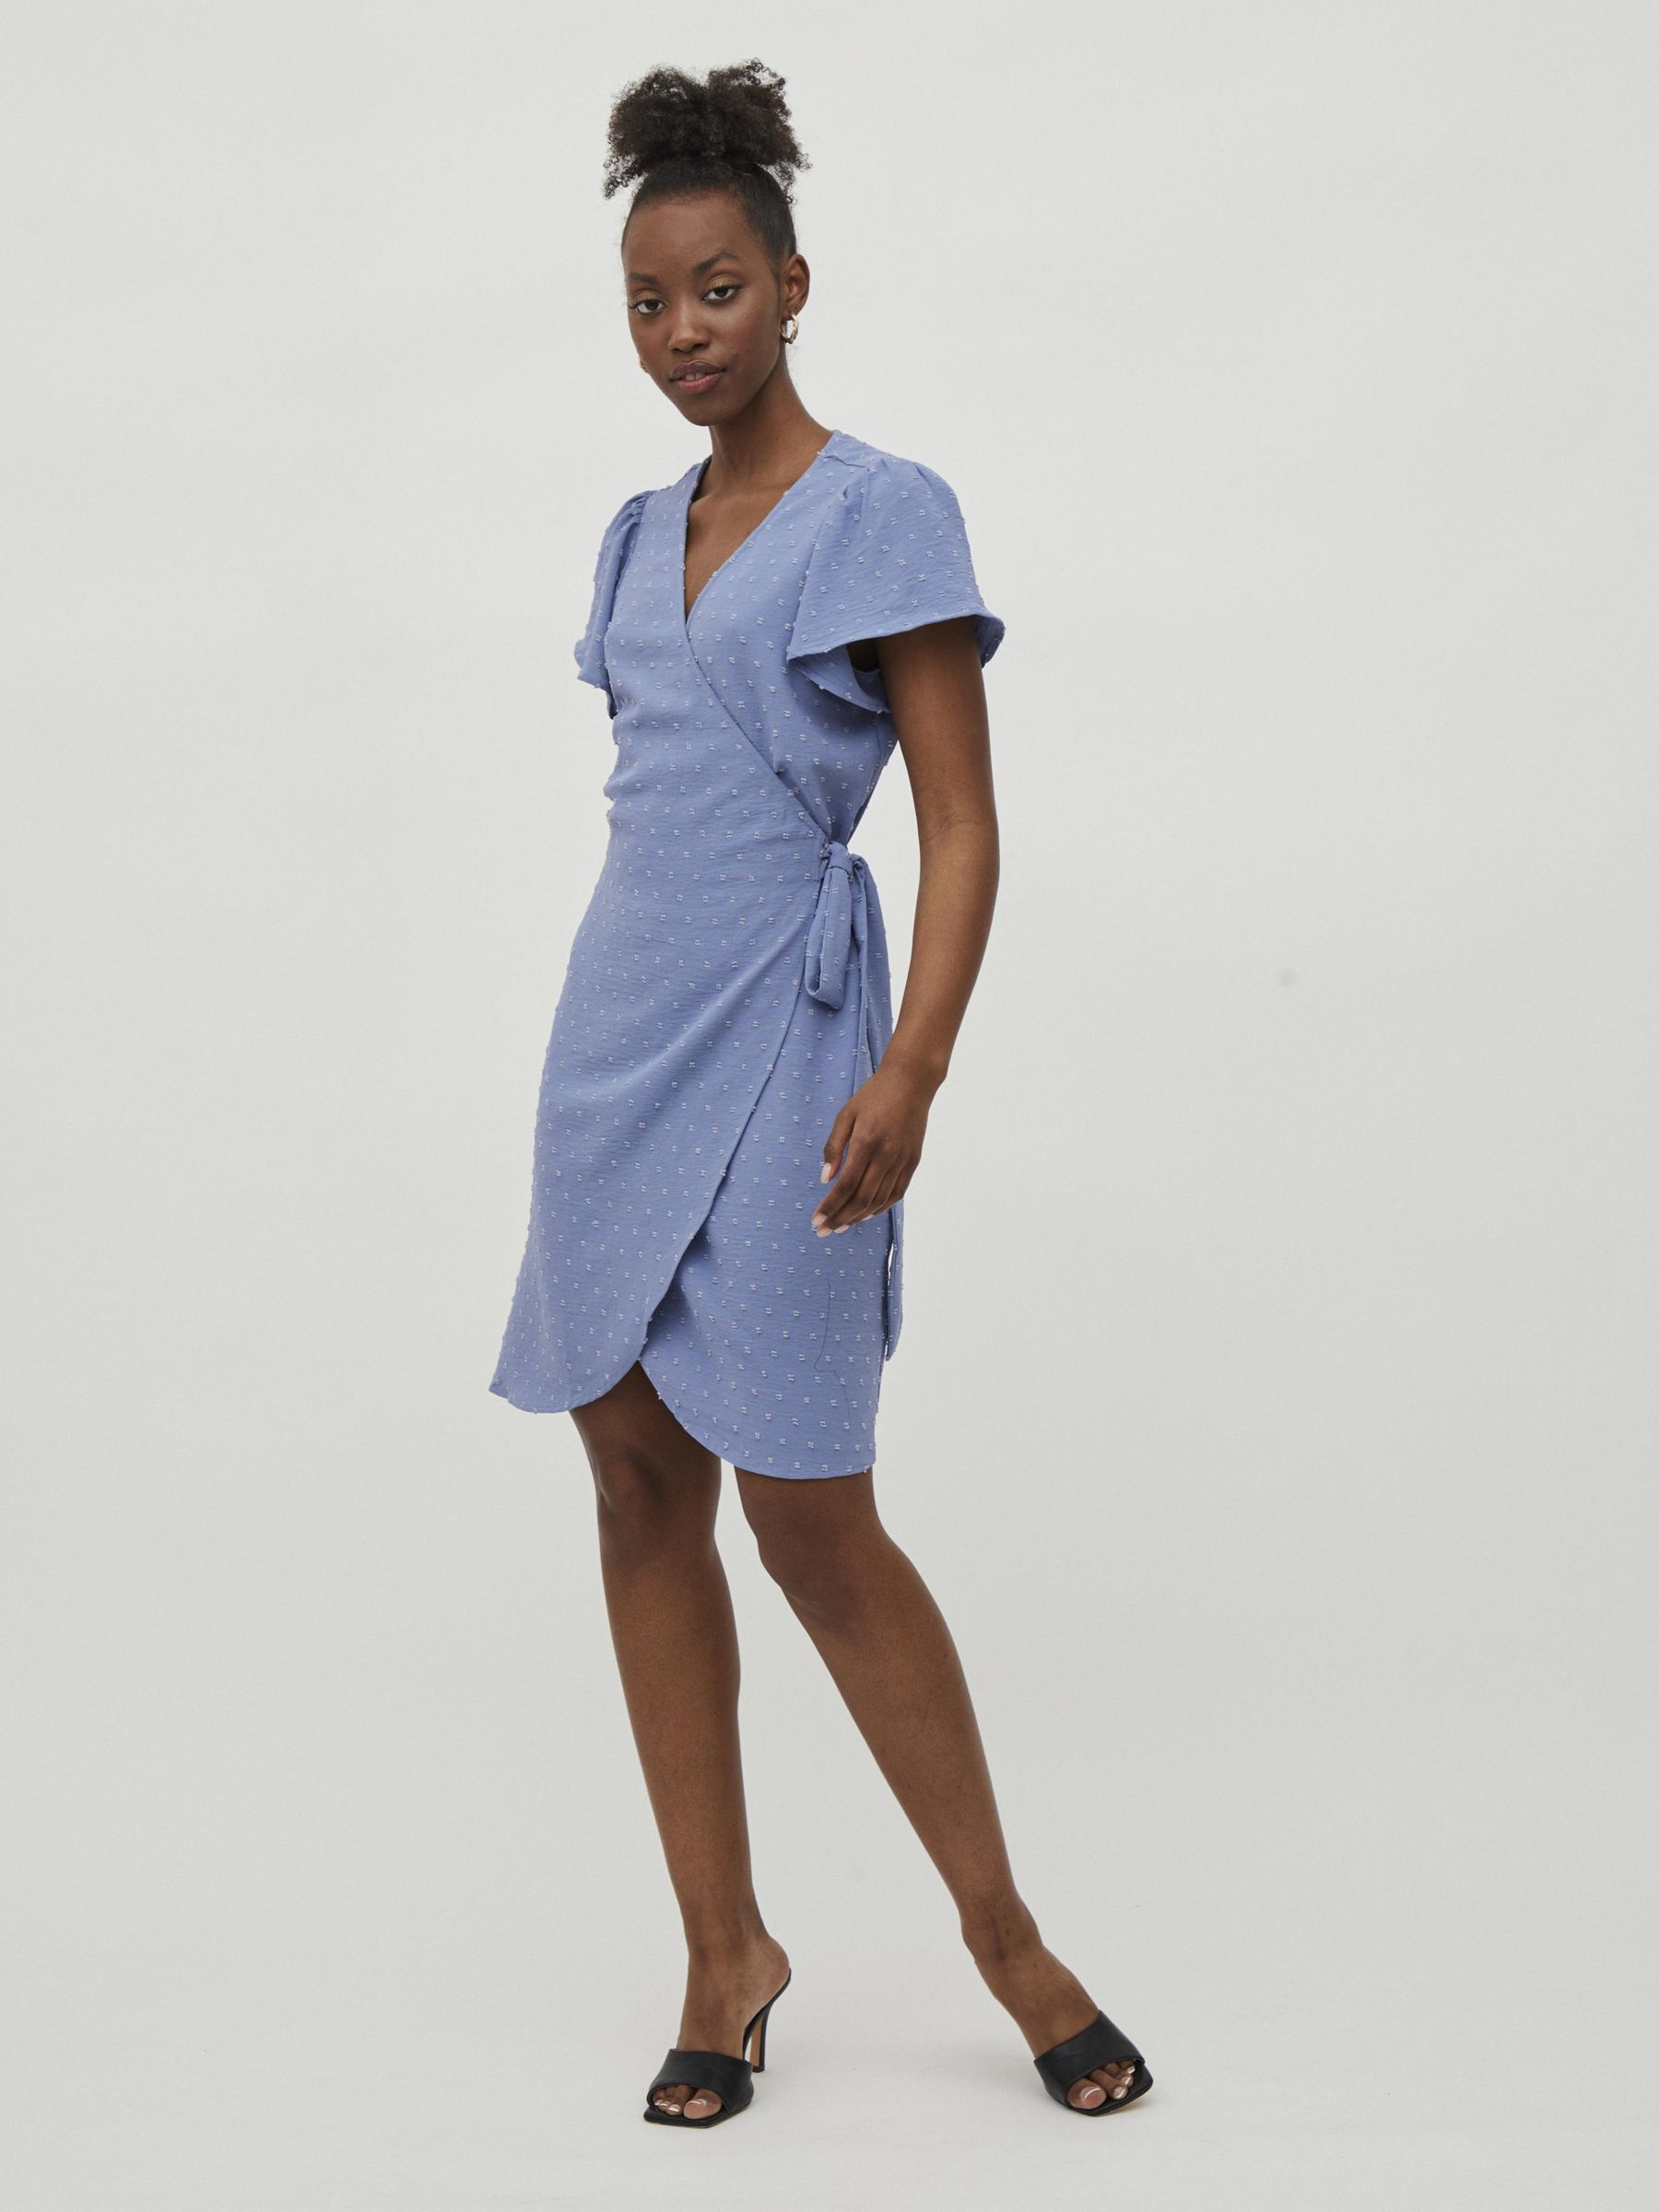 Wrap Dresses For Women - Explore Our Styles | VILA Official®